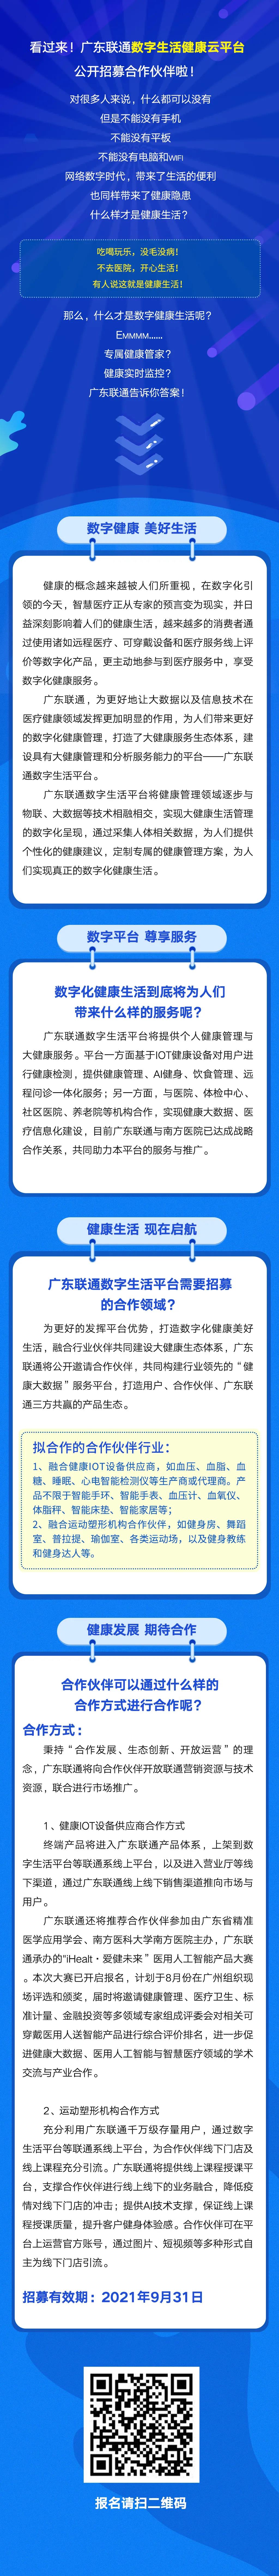 看过来！广东联通数字生活健康云平台公开招募合作伙伴啦！